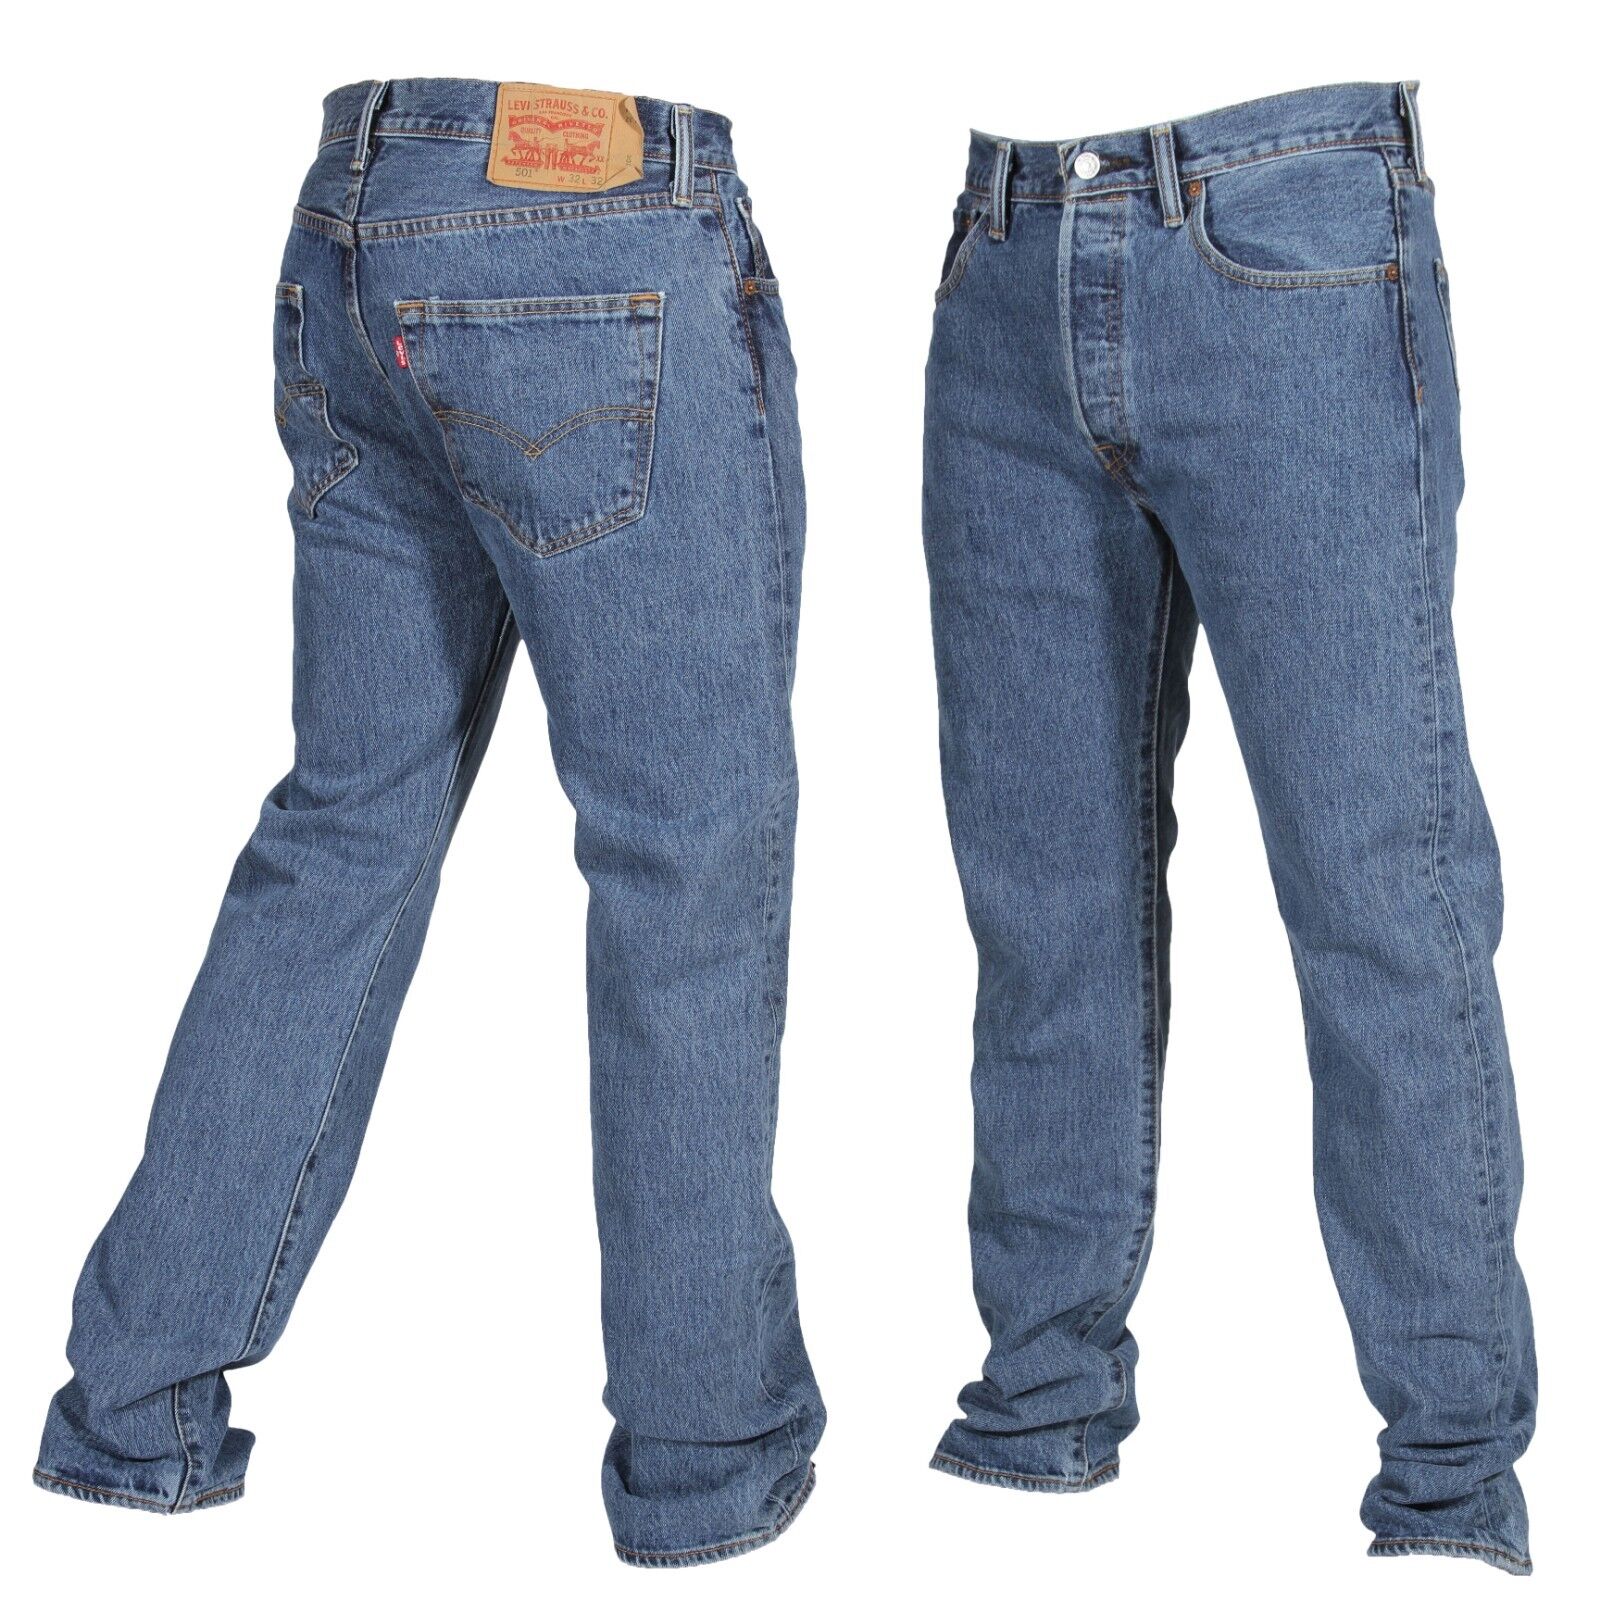 Levis 501 Jeans Mens Size 40 X 30 